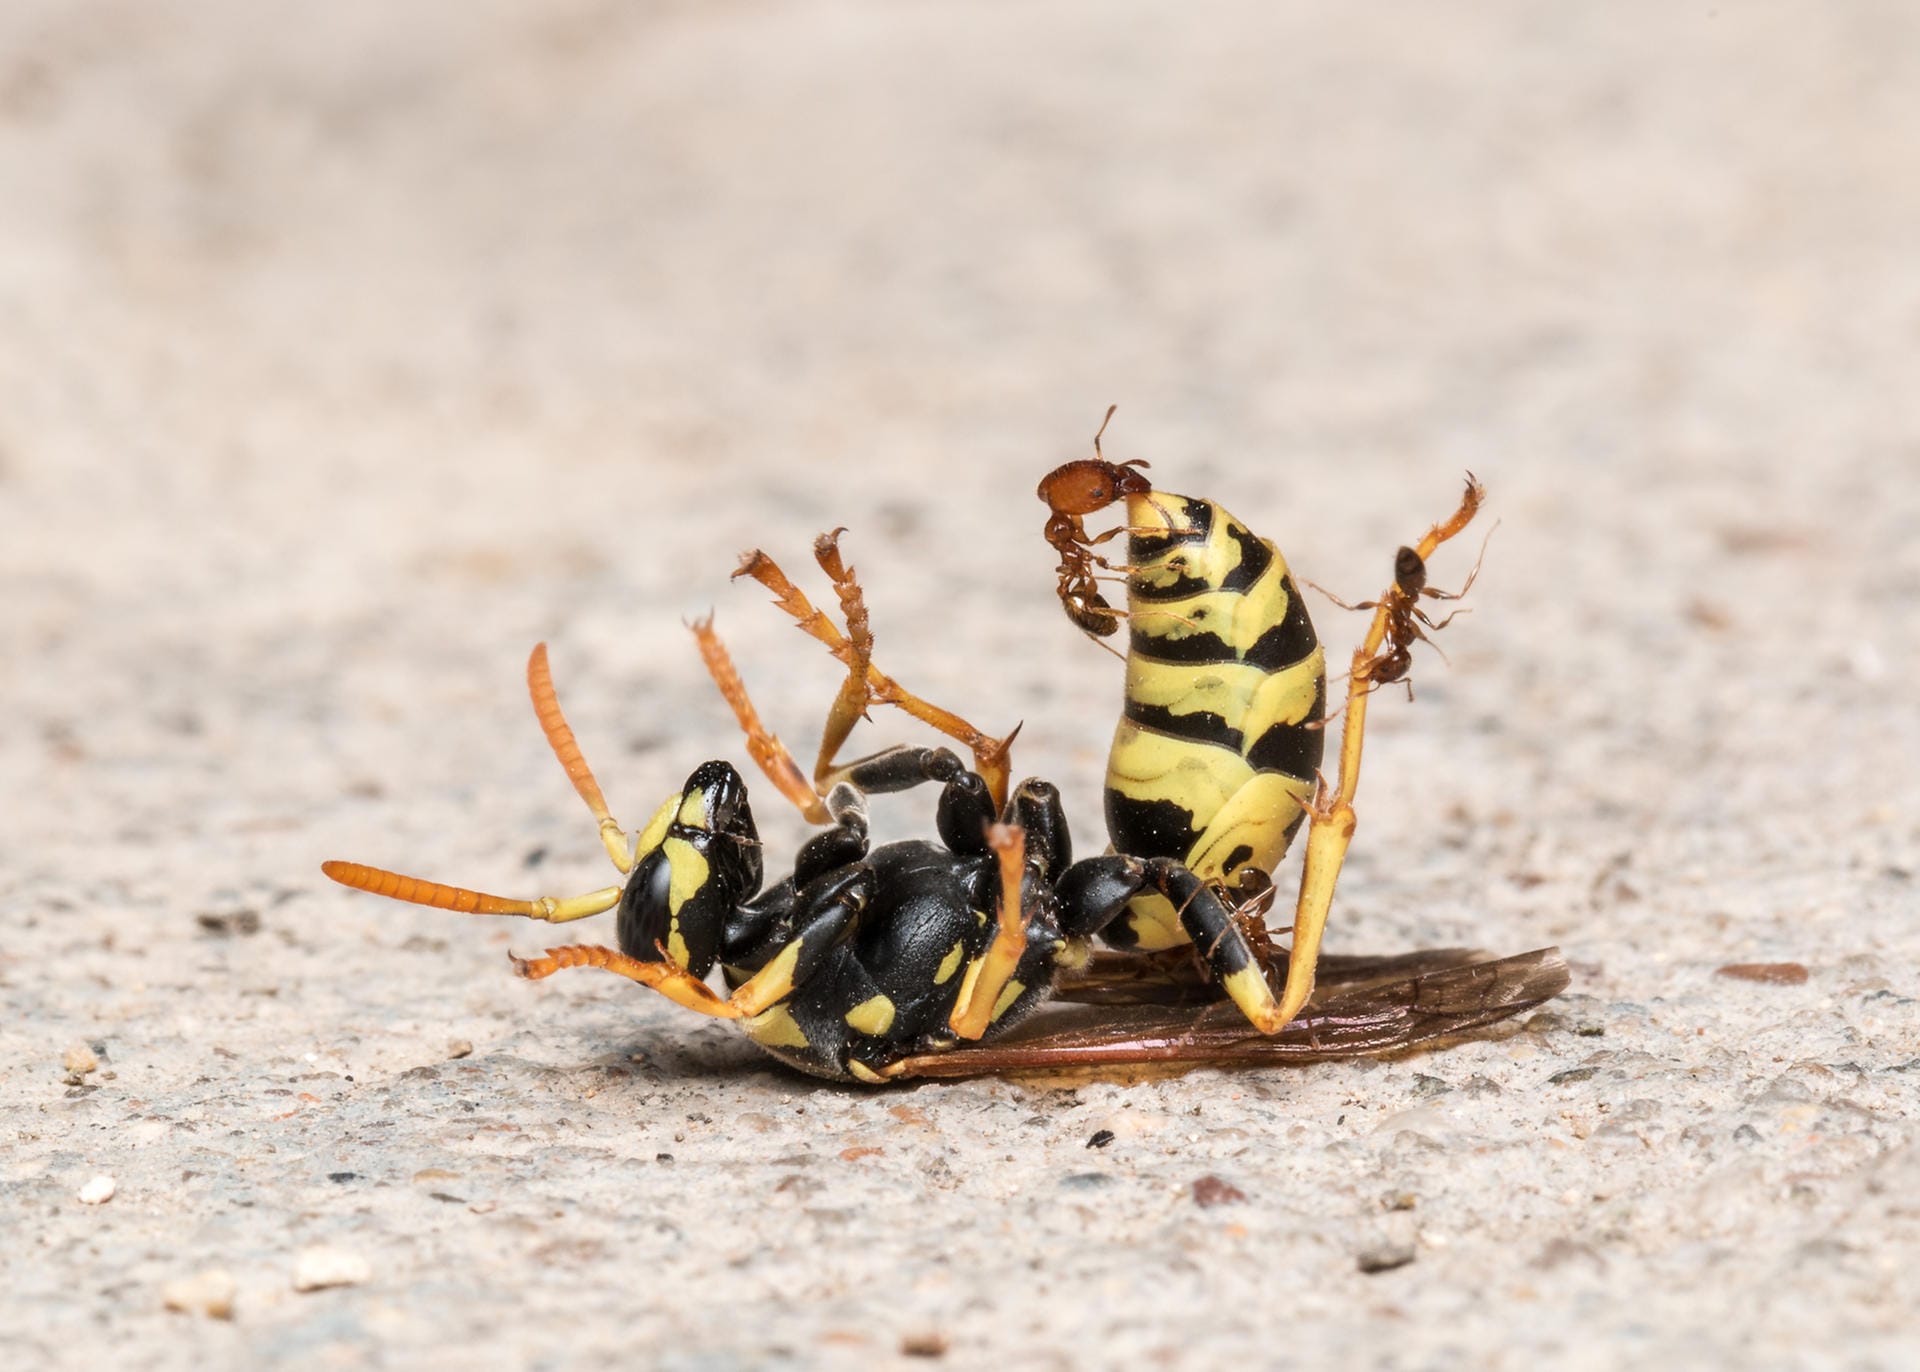 Teamarbeit: Der Fotograf konnte beobachten, wie die winzigen Ameisen die Wespe davon trugen.